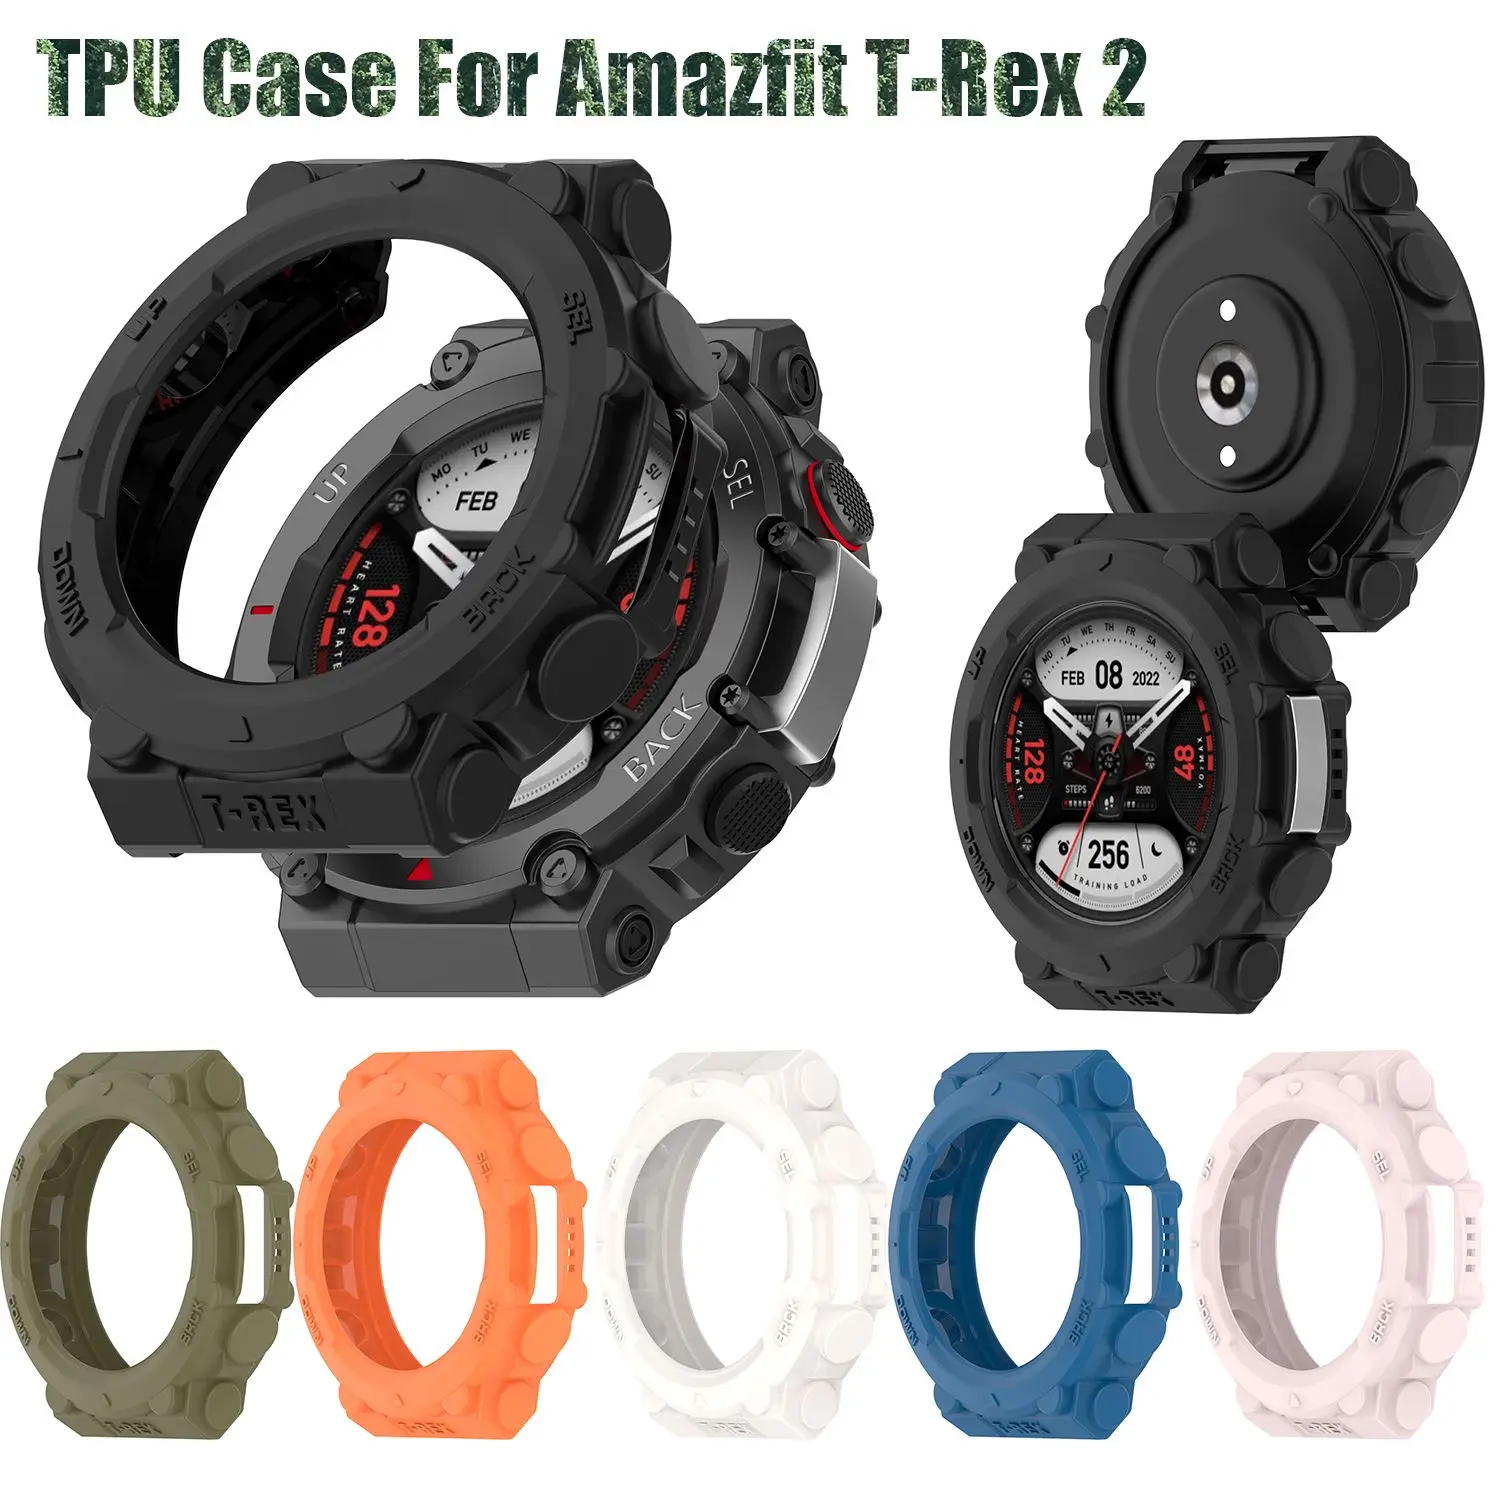 

Защитный чехол из ТПУ для смарт-часов Amazfit T-Rex 2, защитная рамка для смарт-часов Huami Amazfit T-Rex 2 Edge, бампер для часов